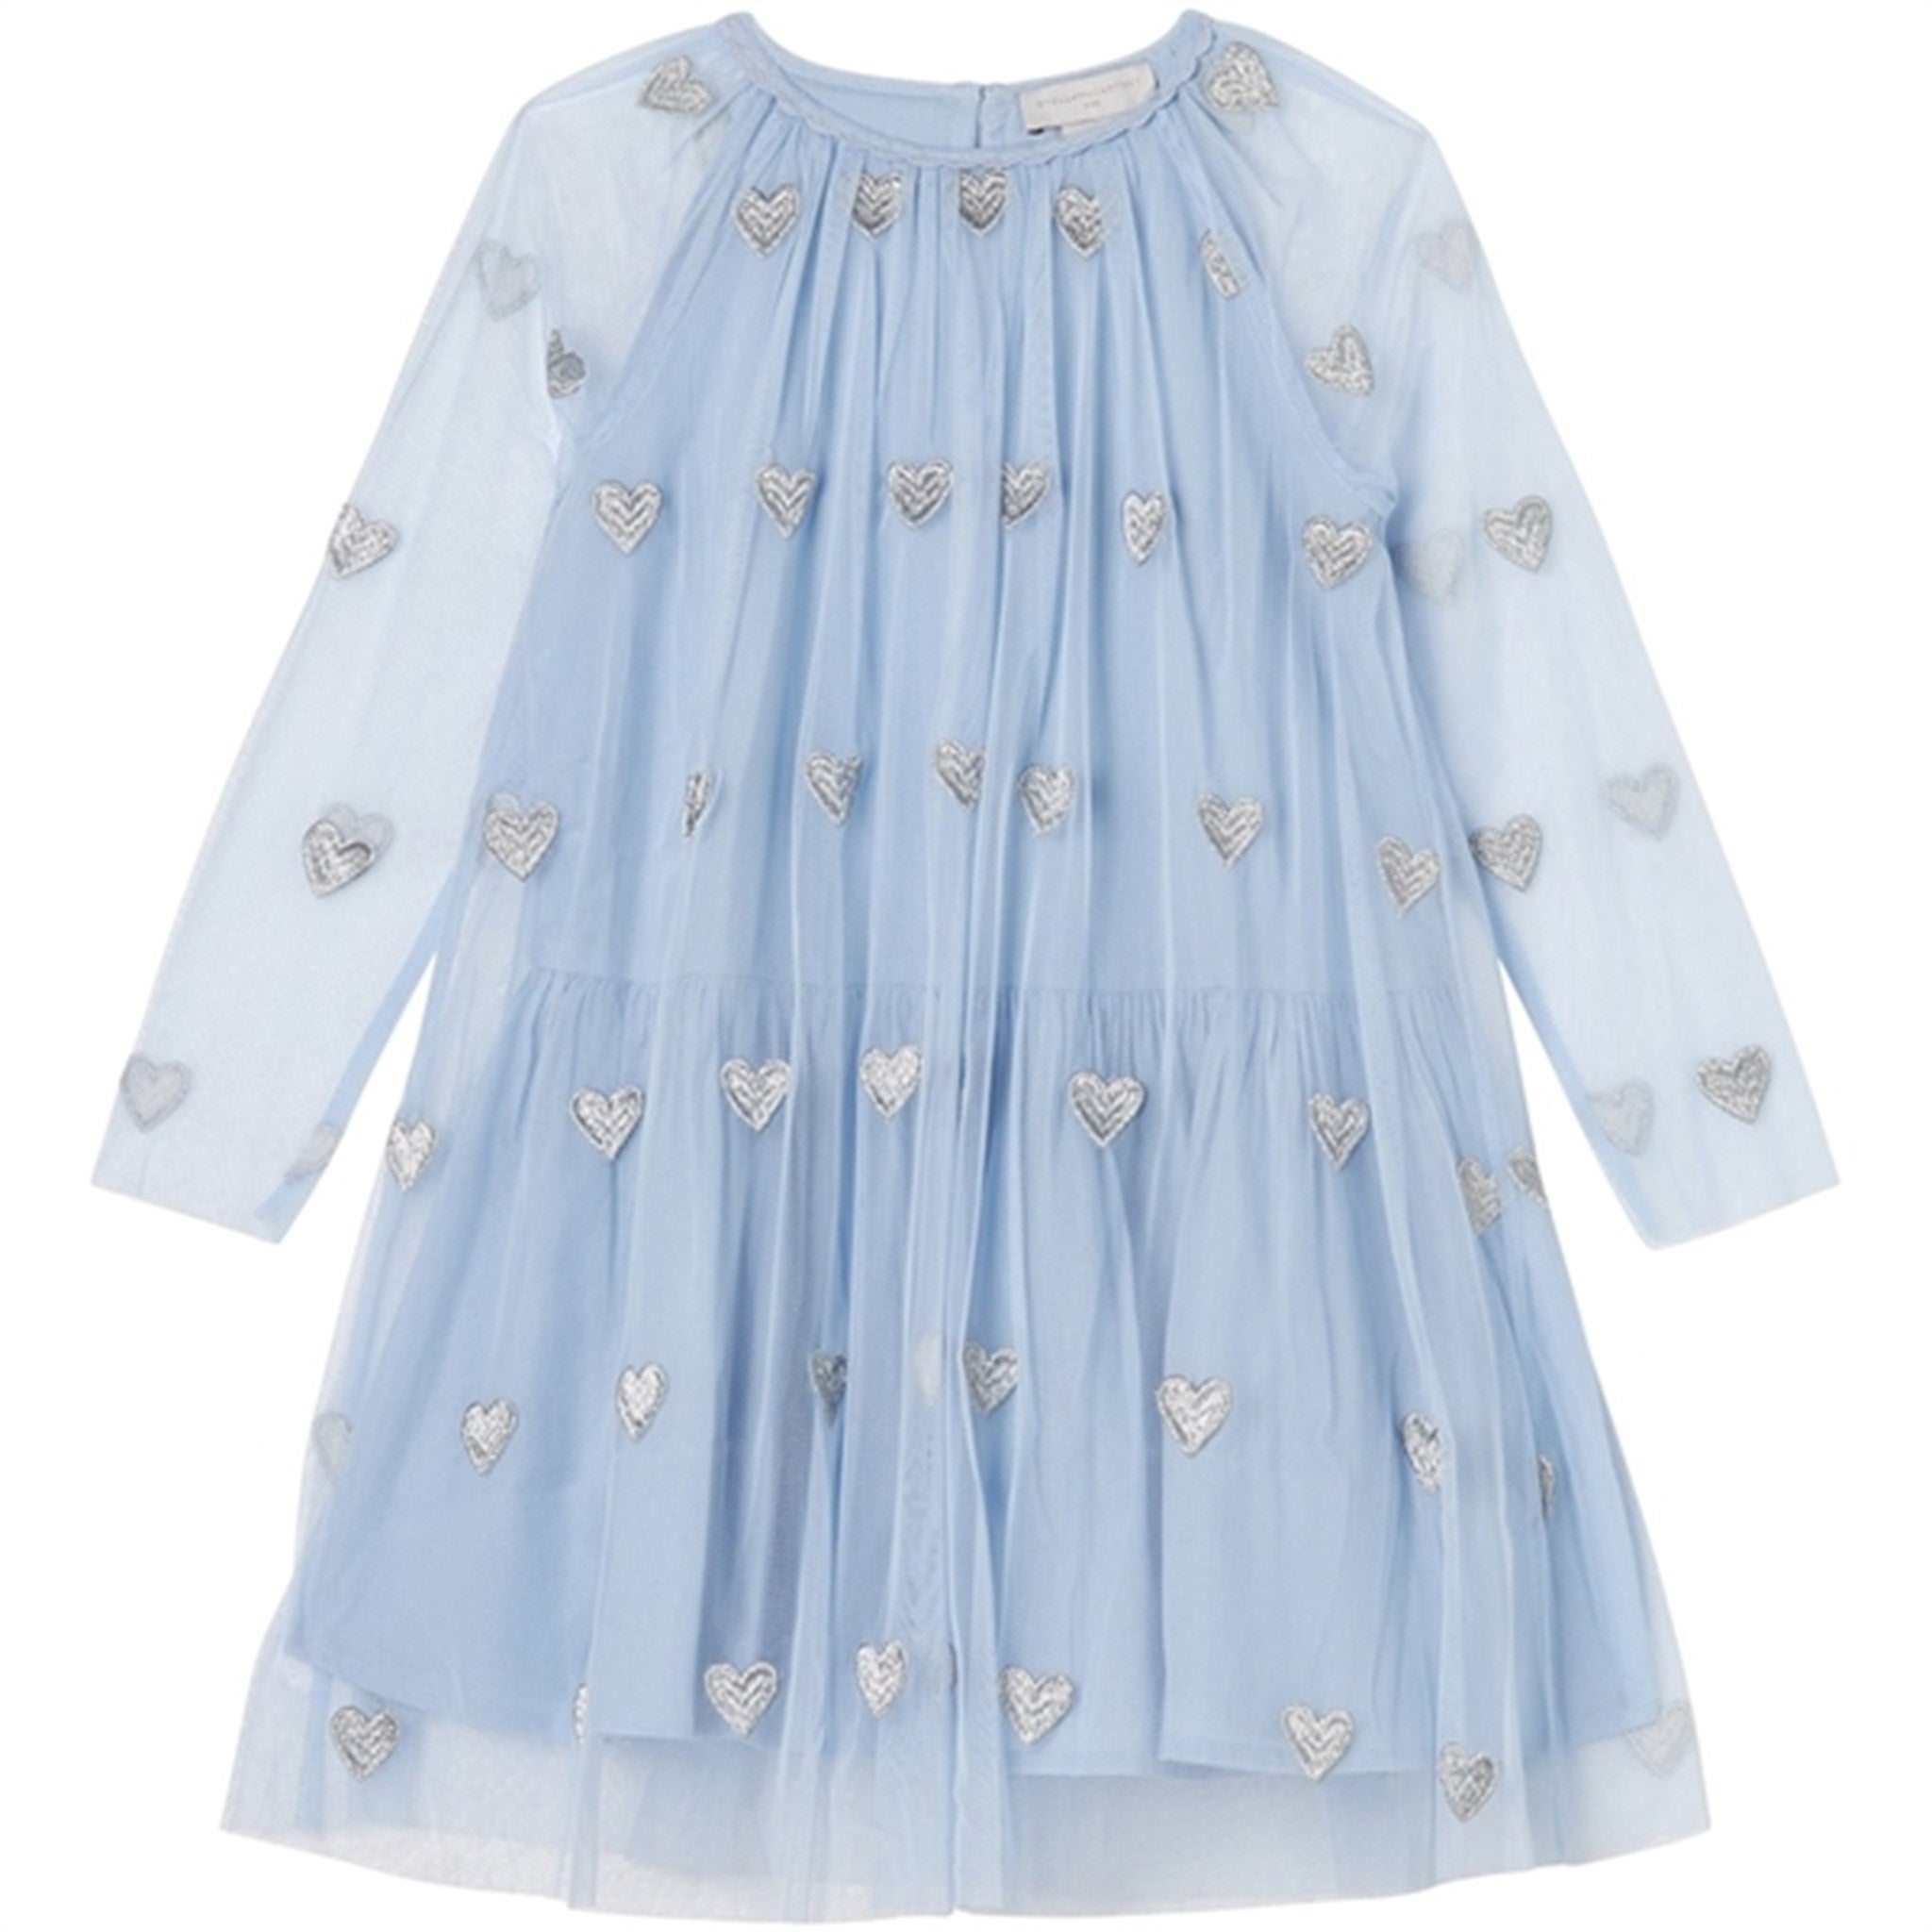 Stella McCartney Celeste/Embroidery Dress